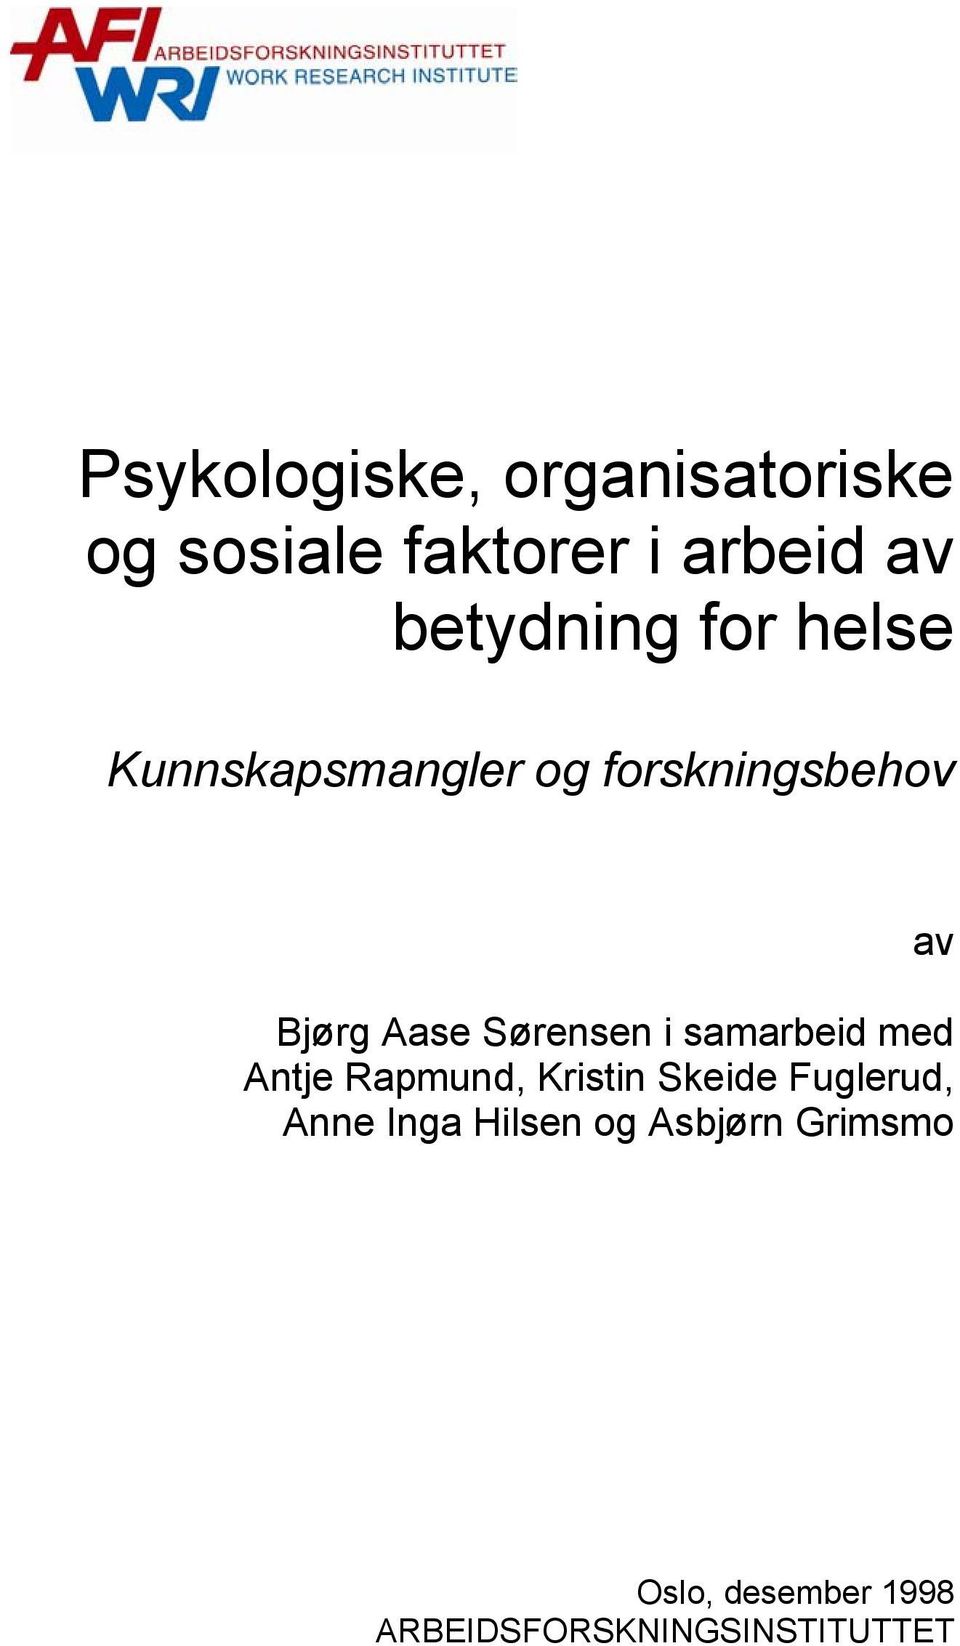 Sørensen i samarbeid med Antje Rapmund, Kristin Skeide Fuglerud, Anne